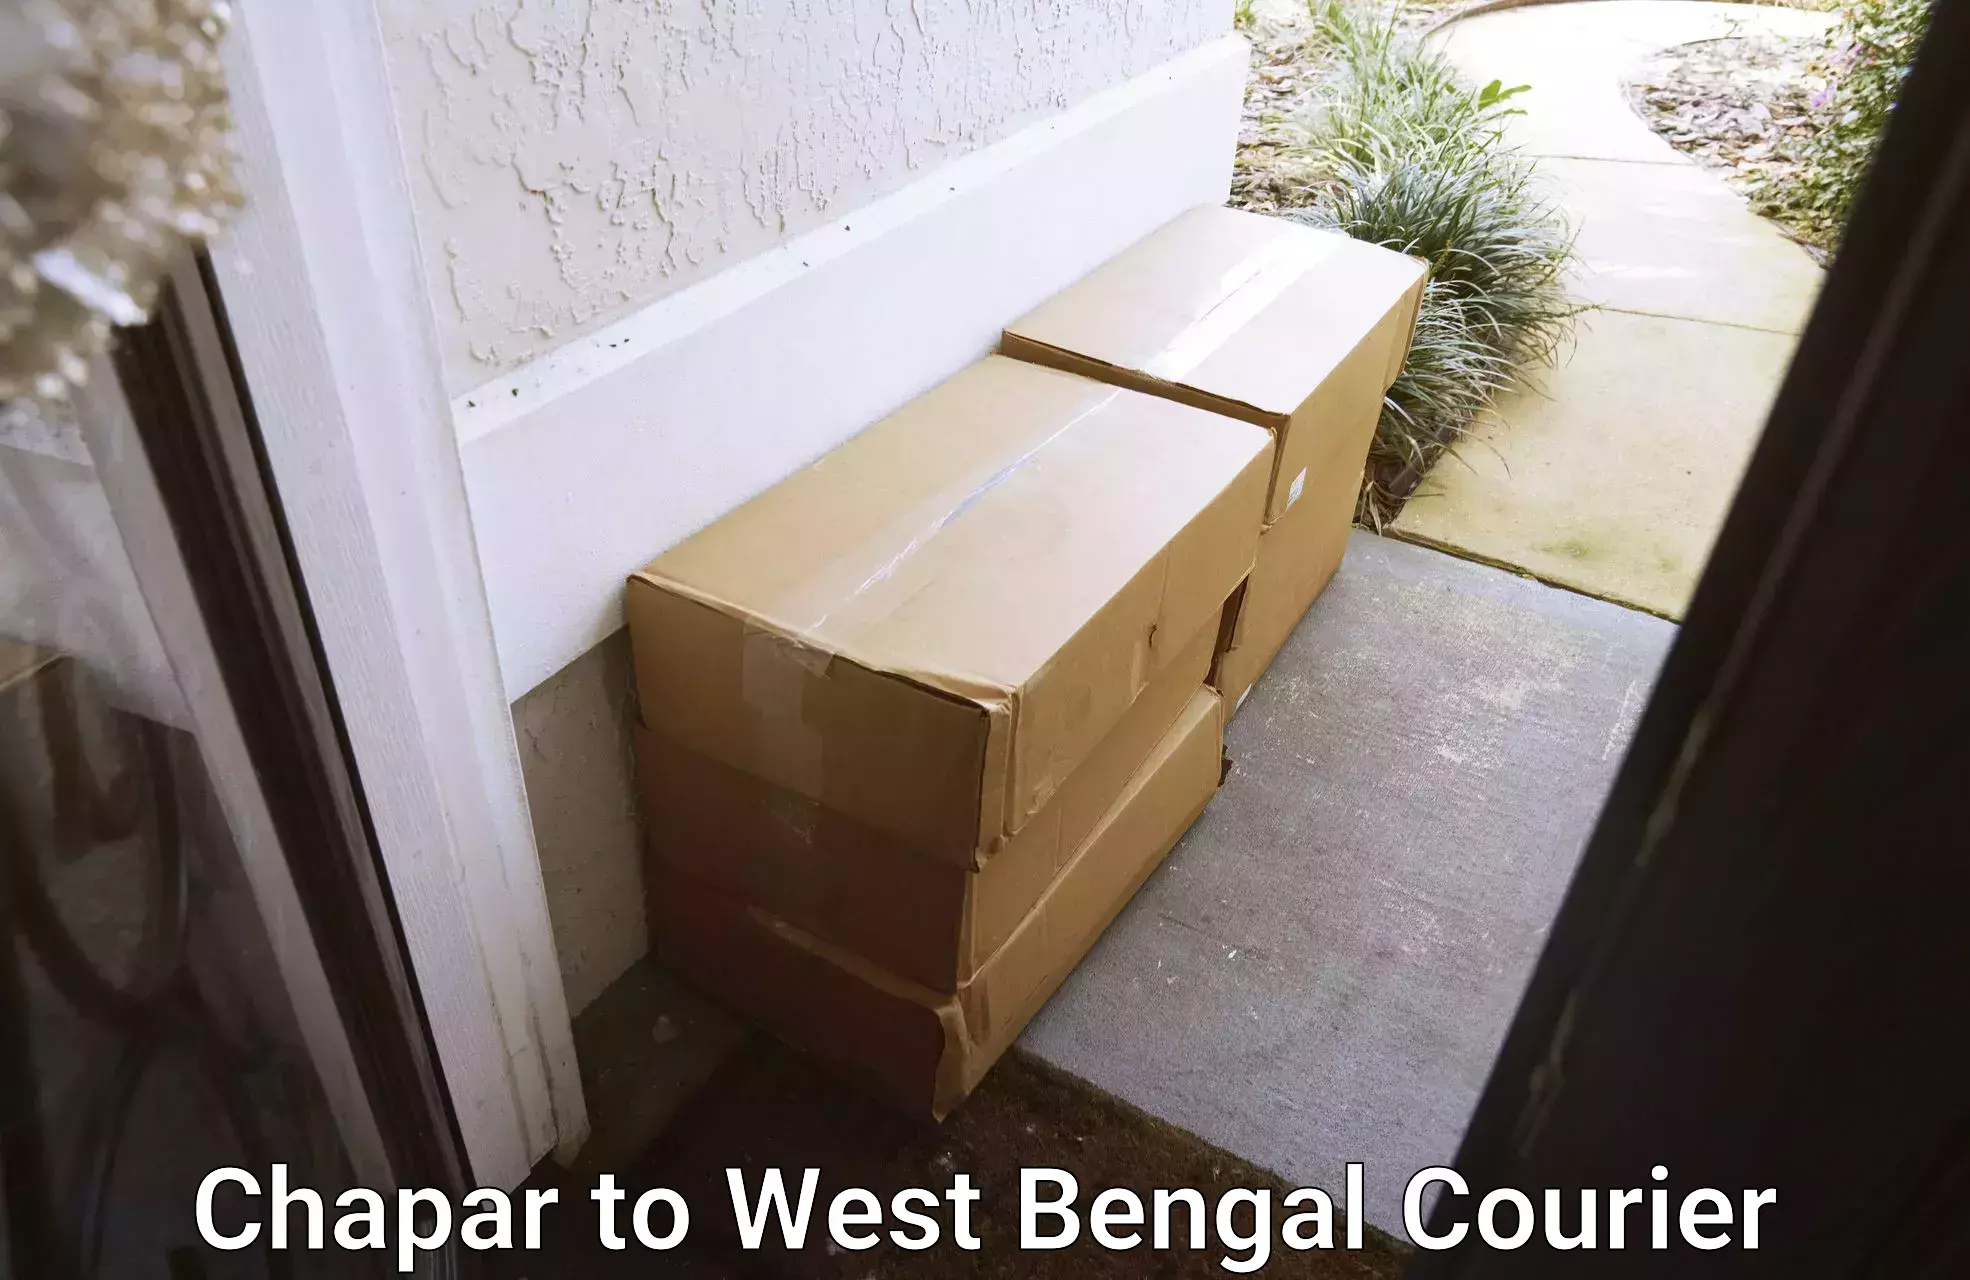 Professional parcel services Chapar to Jalpaiguri